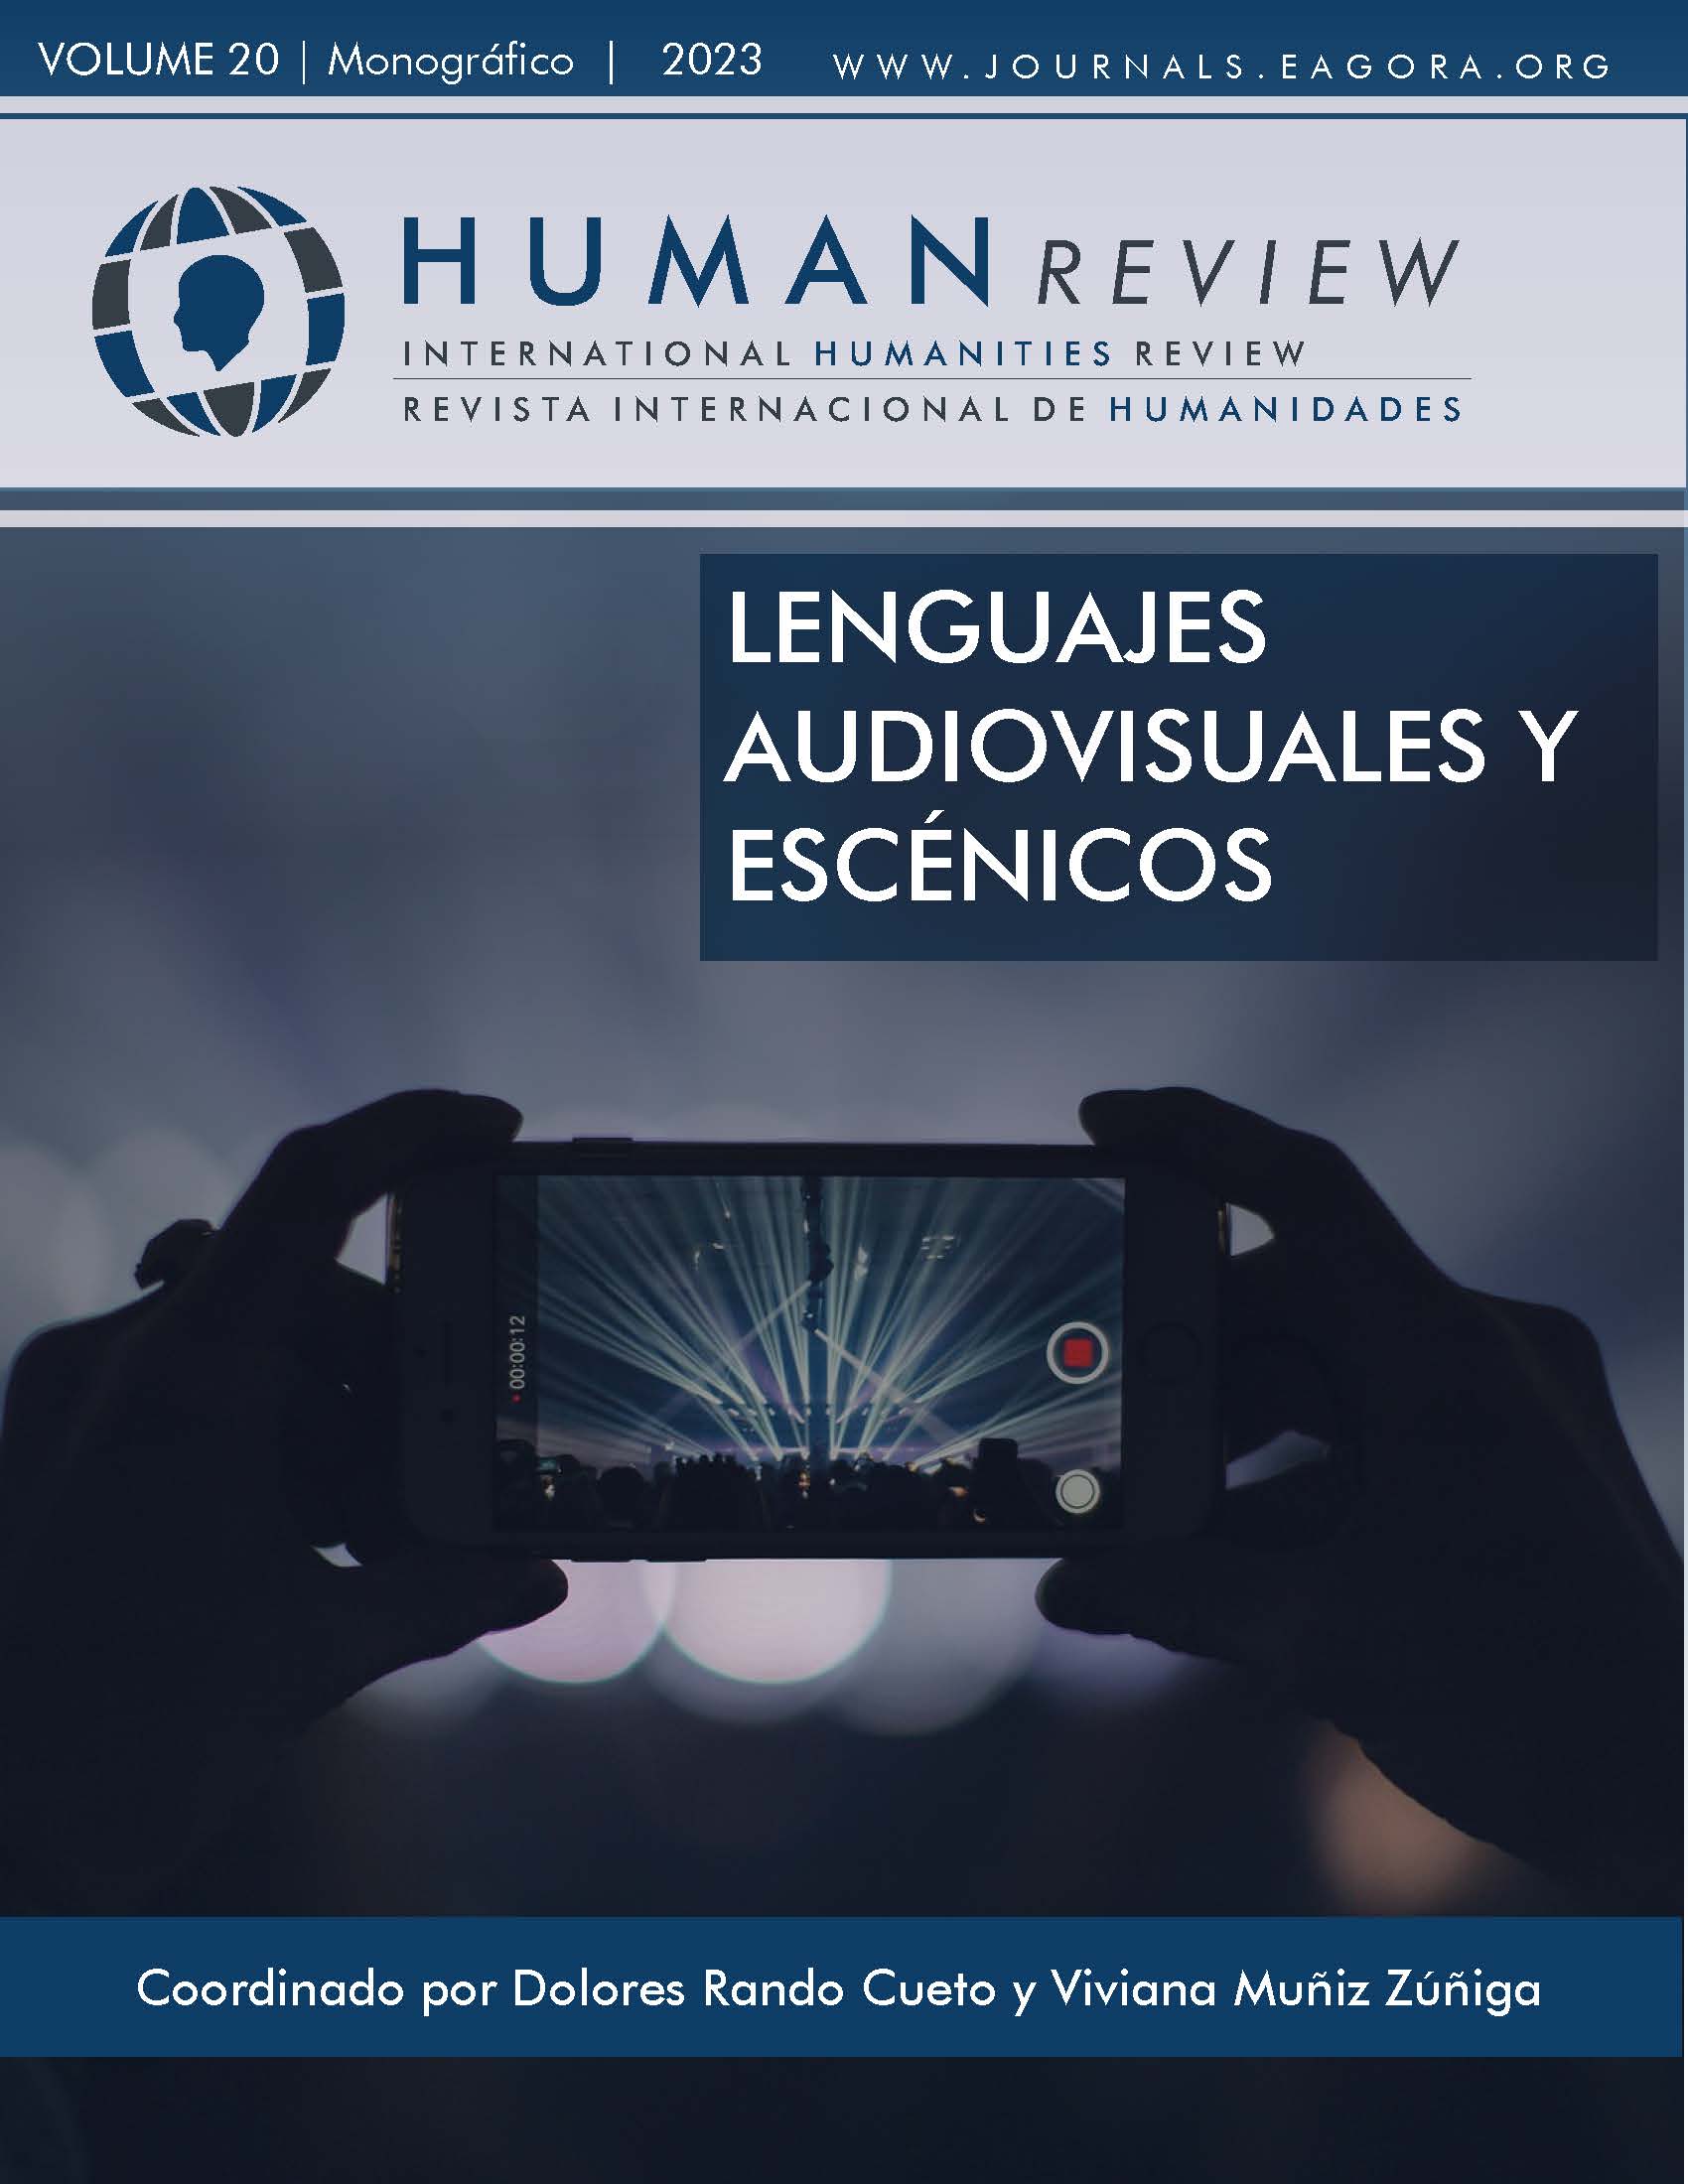 					Visualizar v. 20 n. 2 (2023): Monografía: "Linguagens audiovisuais e cênicas"
				